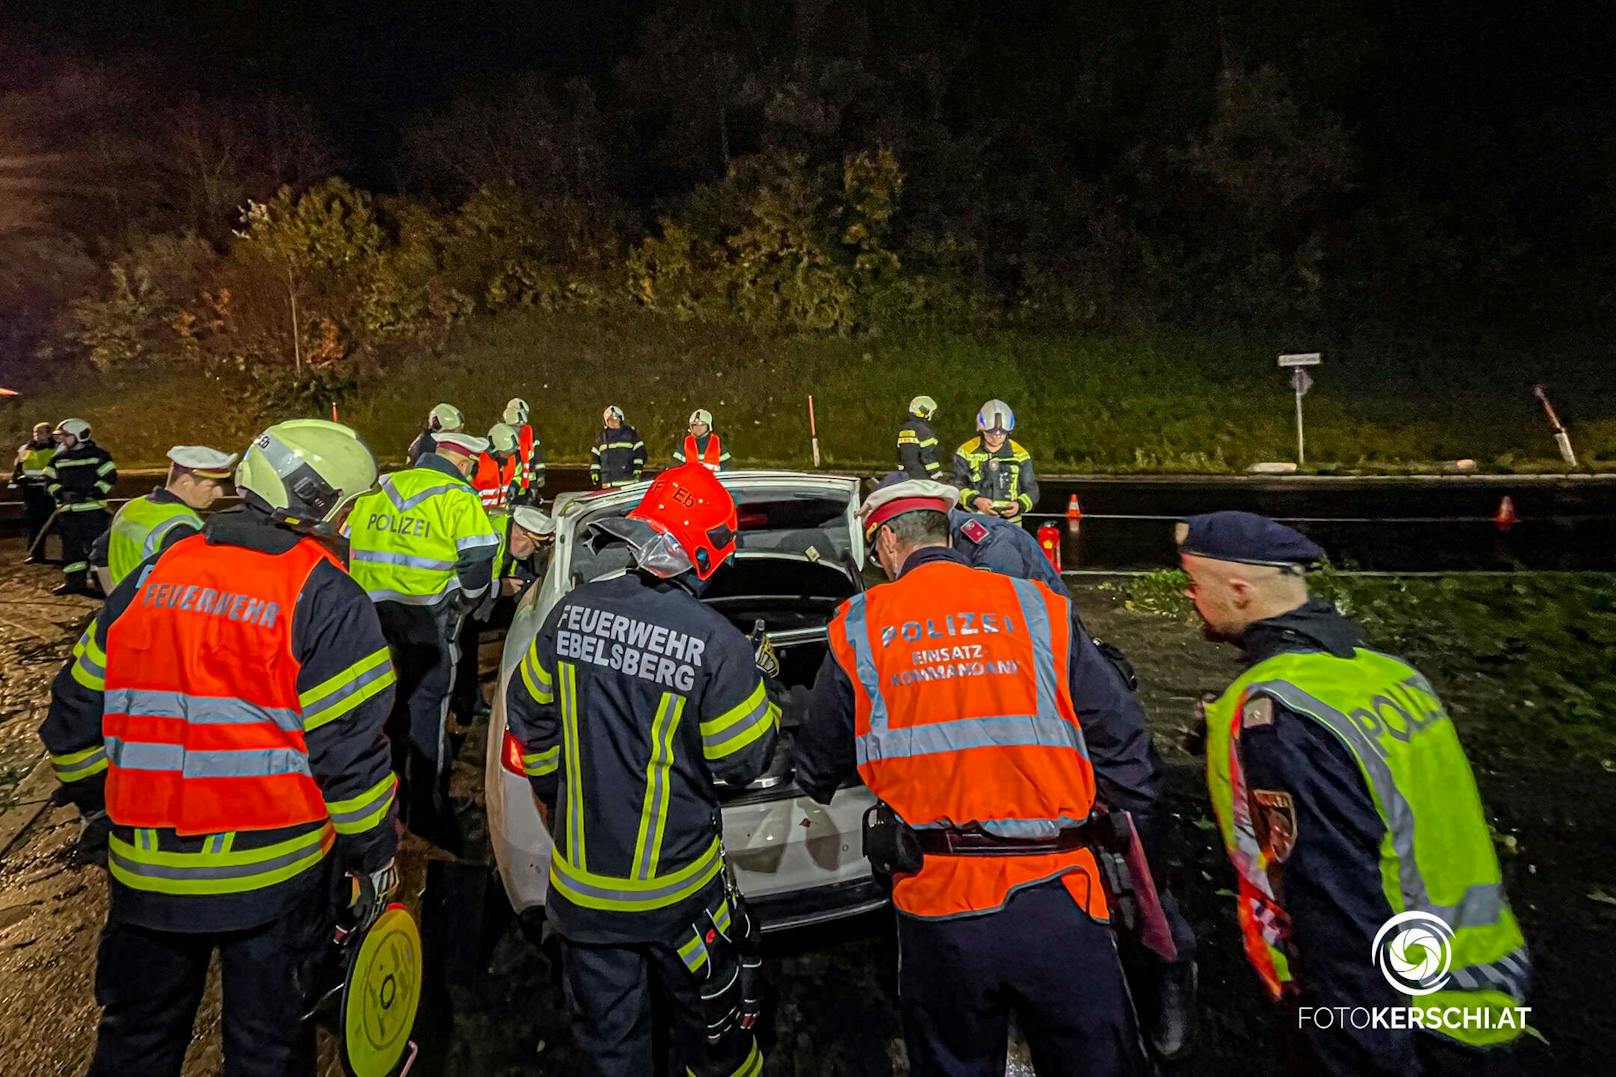 Ein schwerer Verkehrsunfall ereignete sich am Freitagabend im Kreisverkehr Mona-Lisa Tunnel in Linz-Ebelsberg. Ein Auto hat mit vermutlich überhöhter Geschwindigkeit einen Verkehrsleitmasten gerammt und kam in Folge am Dach zum Stillstand.